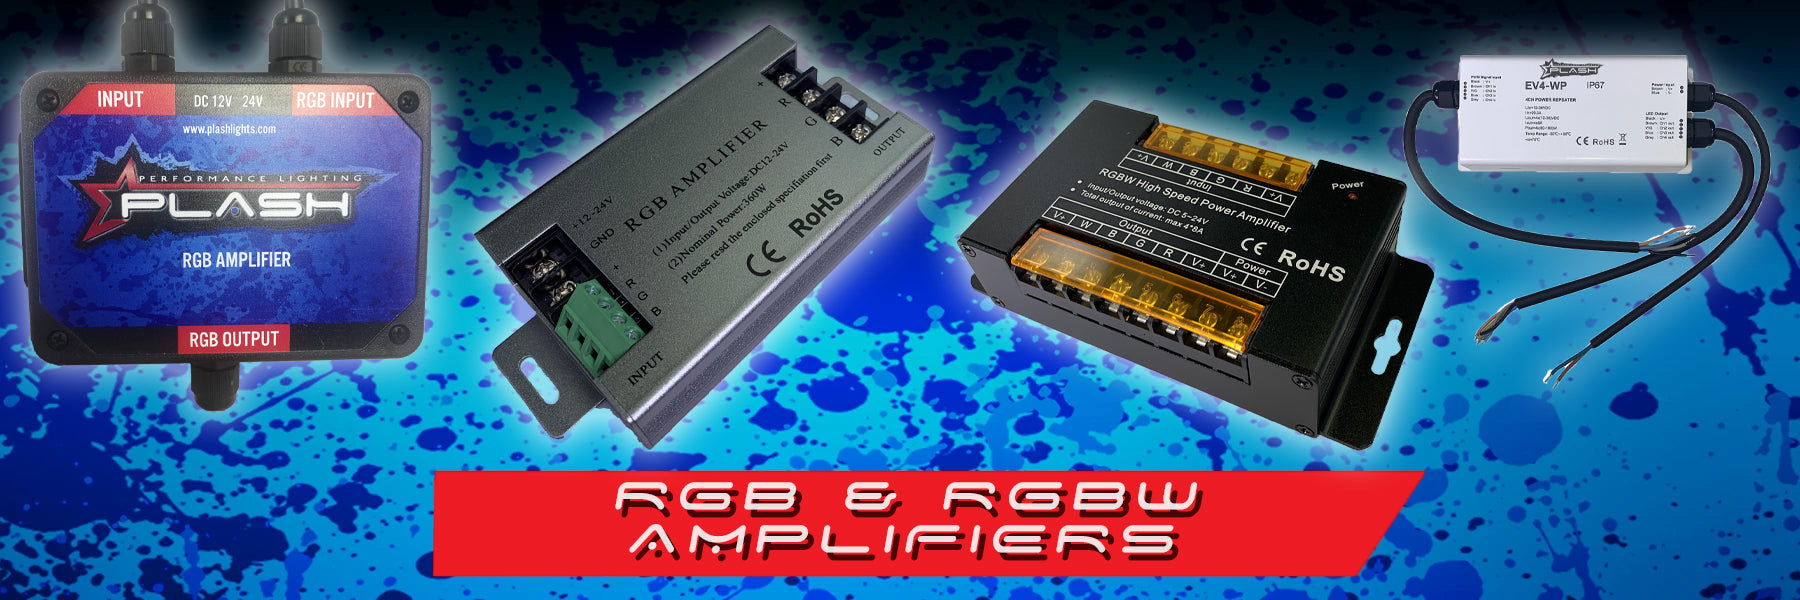 RGB & RGBW AMPLIFIERS